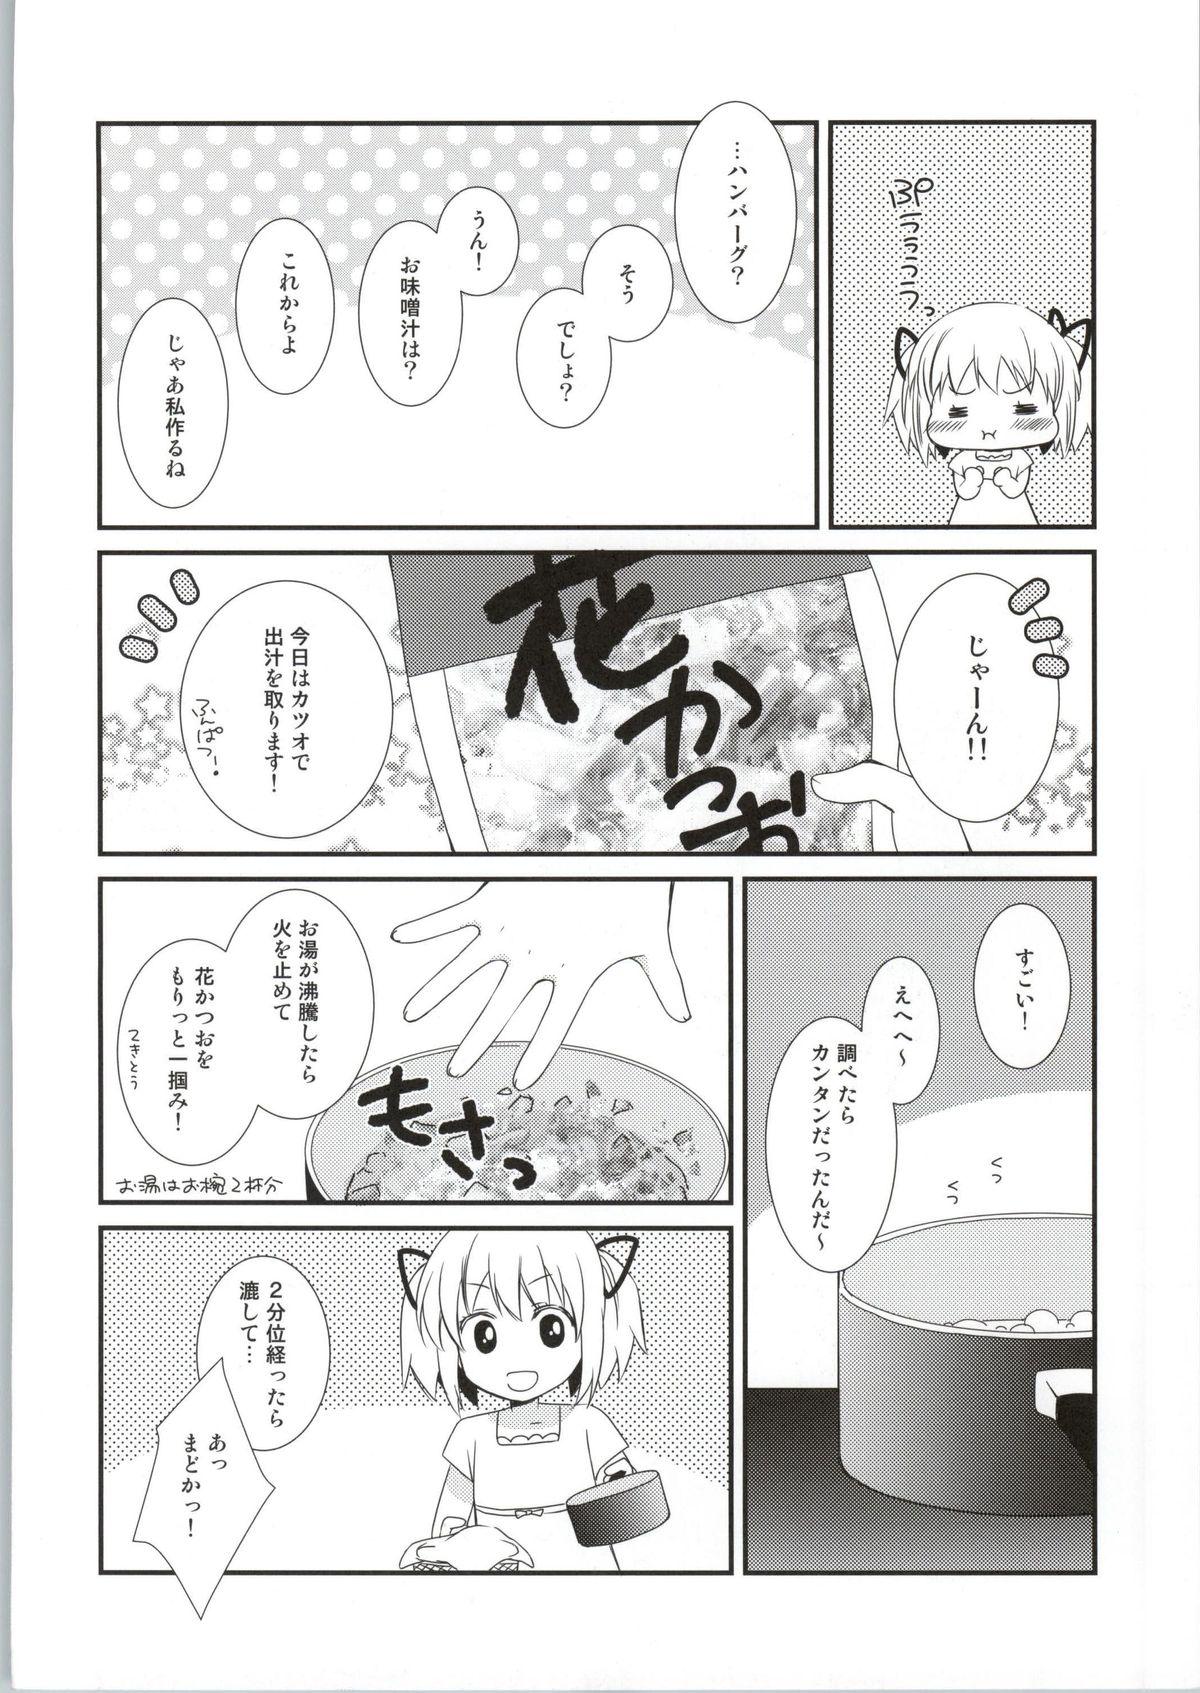 Gemidos Sengyou Shufu no Sentou Fuku wa - Puella magi madoka magica Boys - Page 11